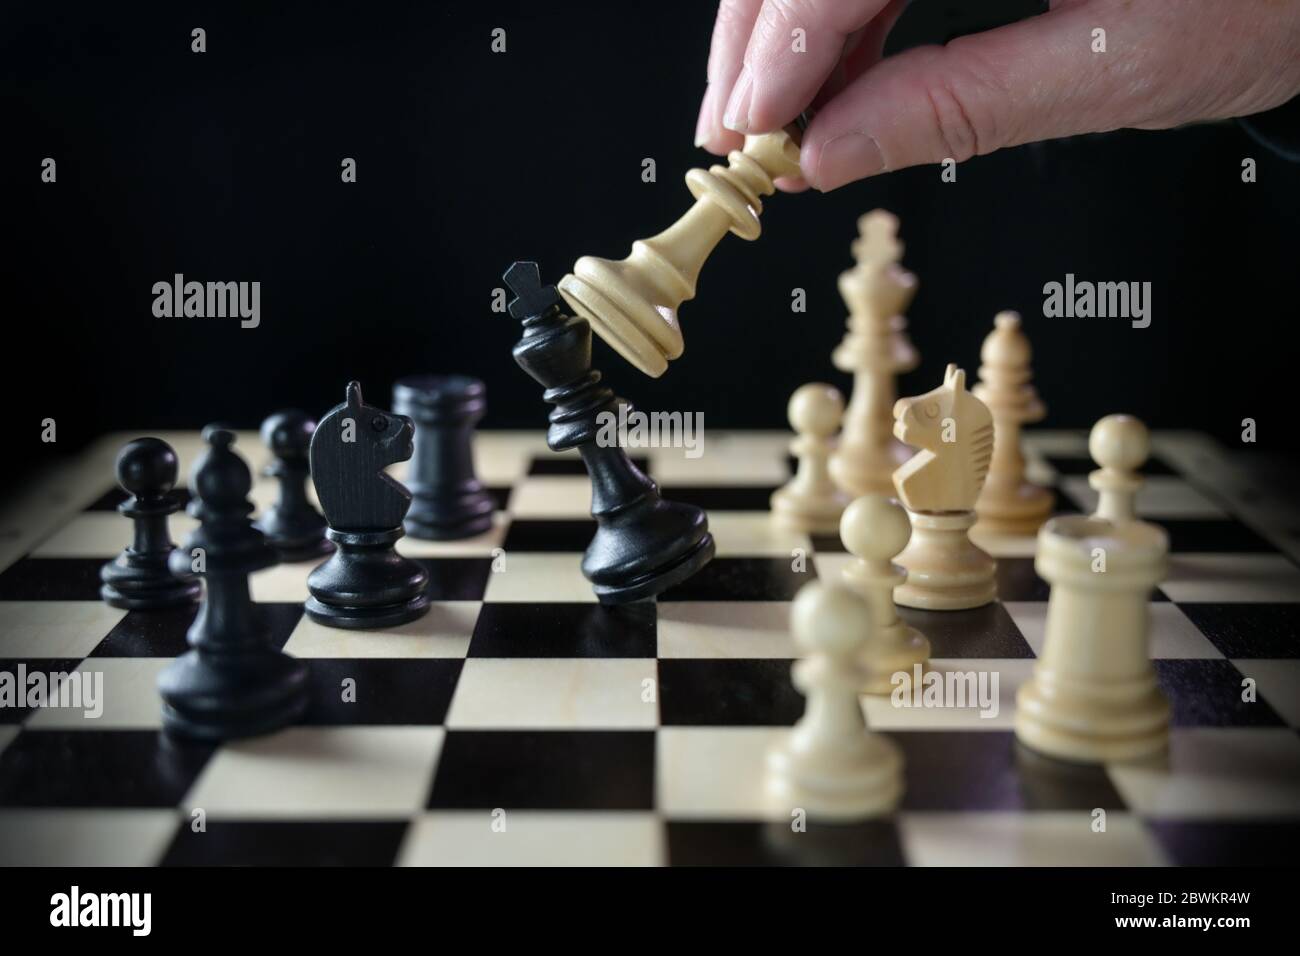 La main humaine joue aux échecs et bat le roi, le cochtier sur le chessboard contre un fond noir, un focus sélectionné, une profondeur de champ étroite Banque D'Images